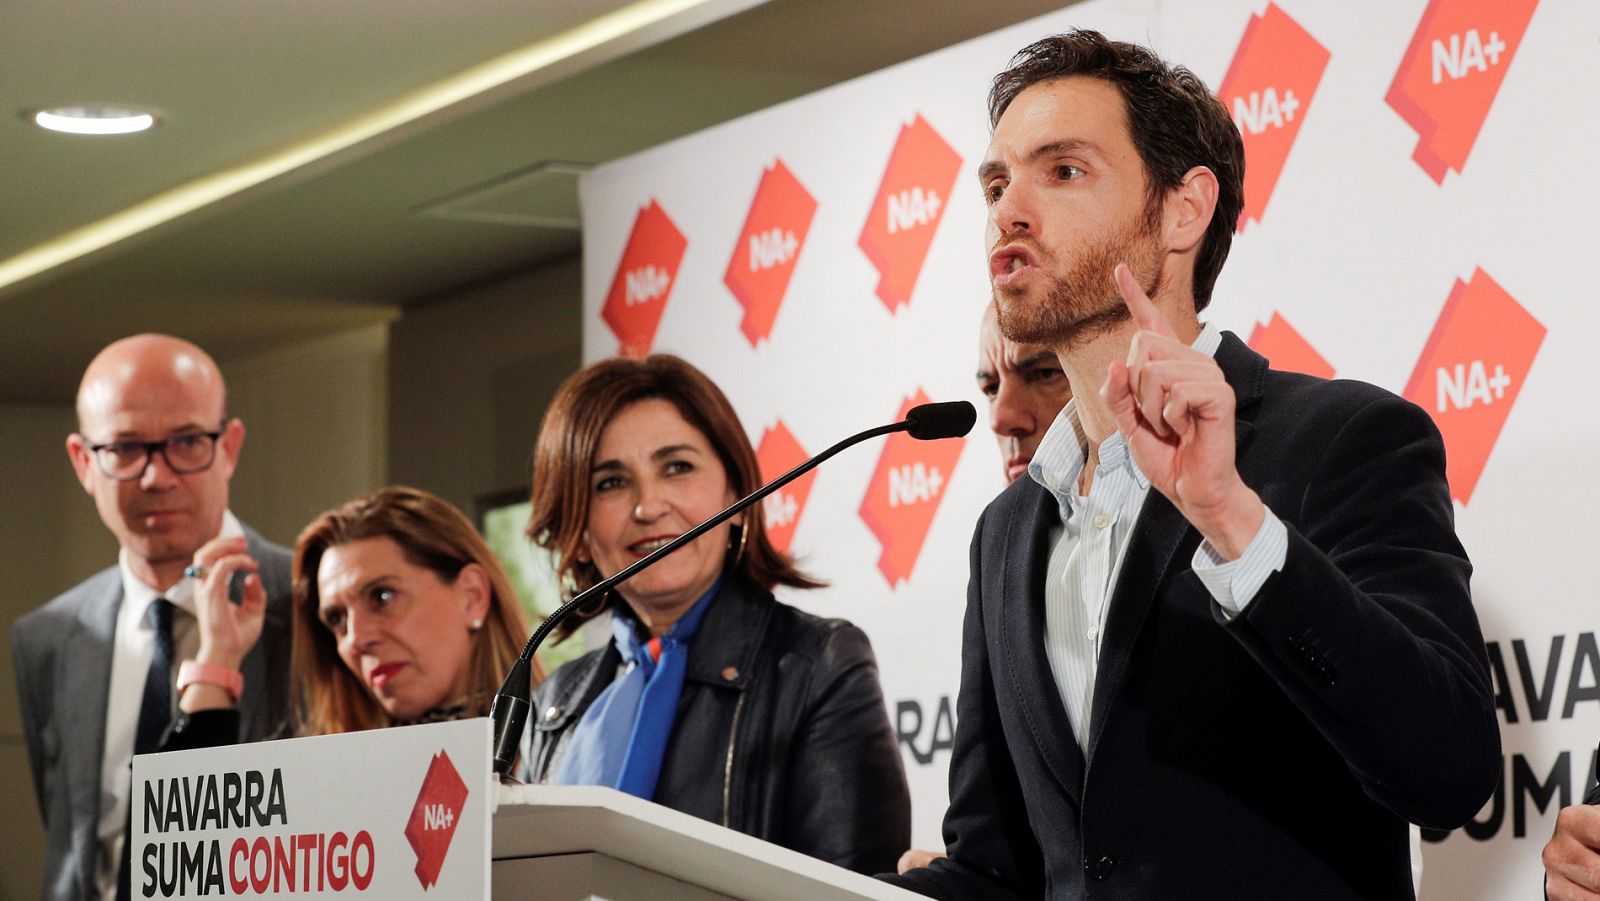 El diputado de Navarra Suma en el Congreso, Sergio Sayas, junto a otros miembros de la coalición Navarra Suma durante la campaña electoral.